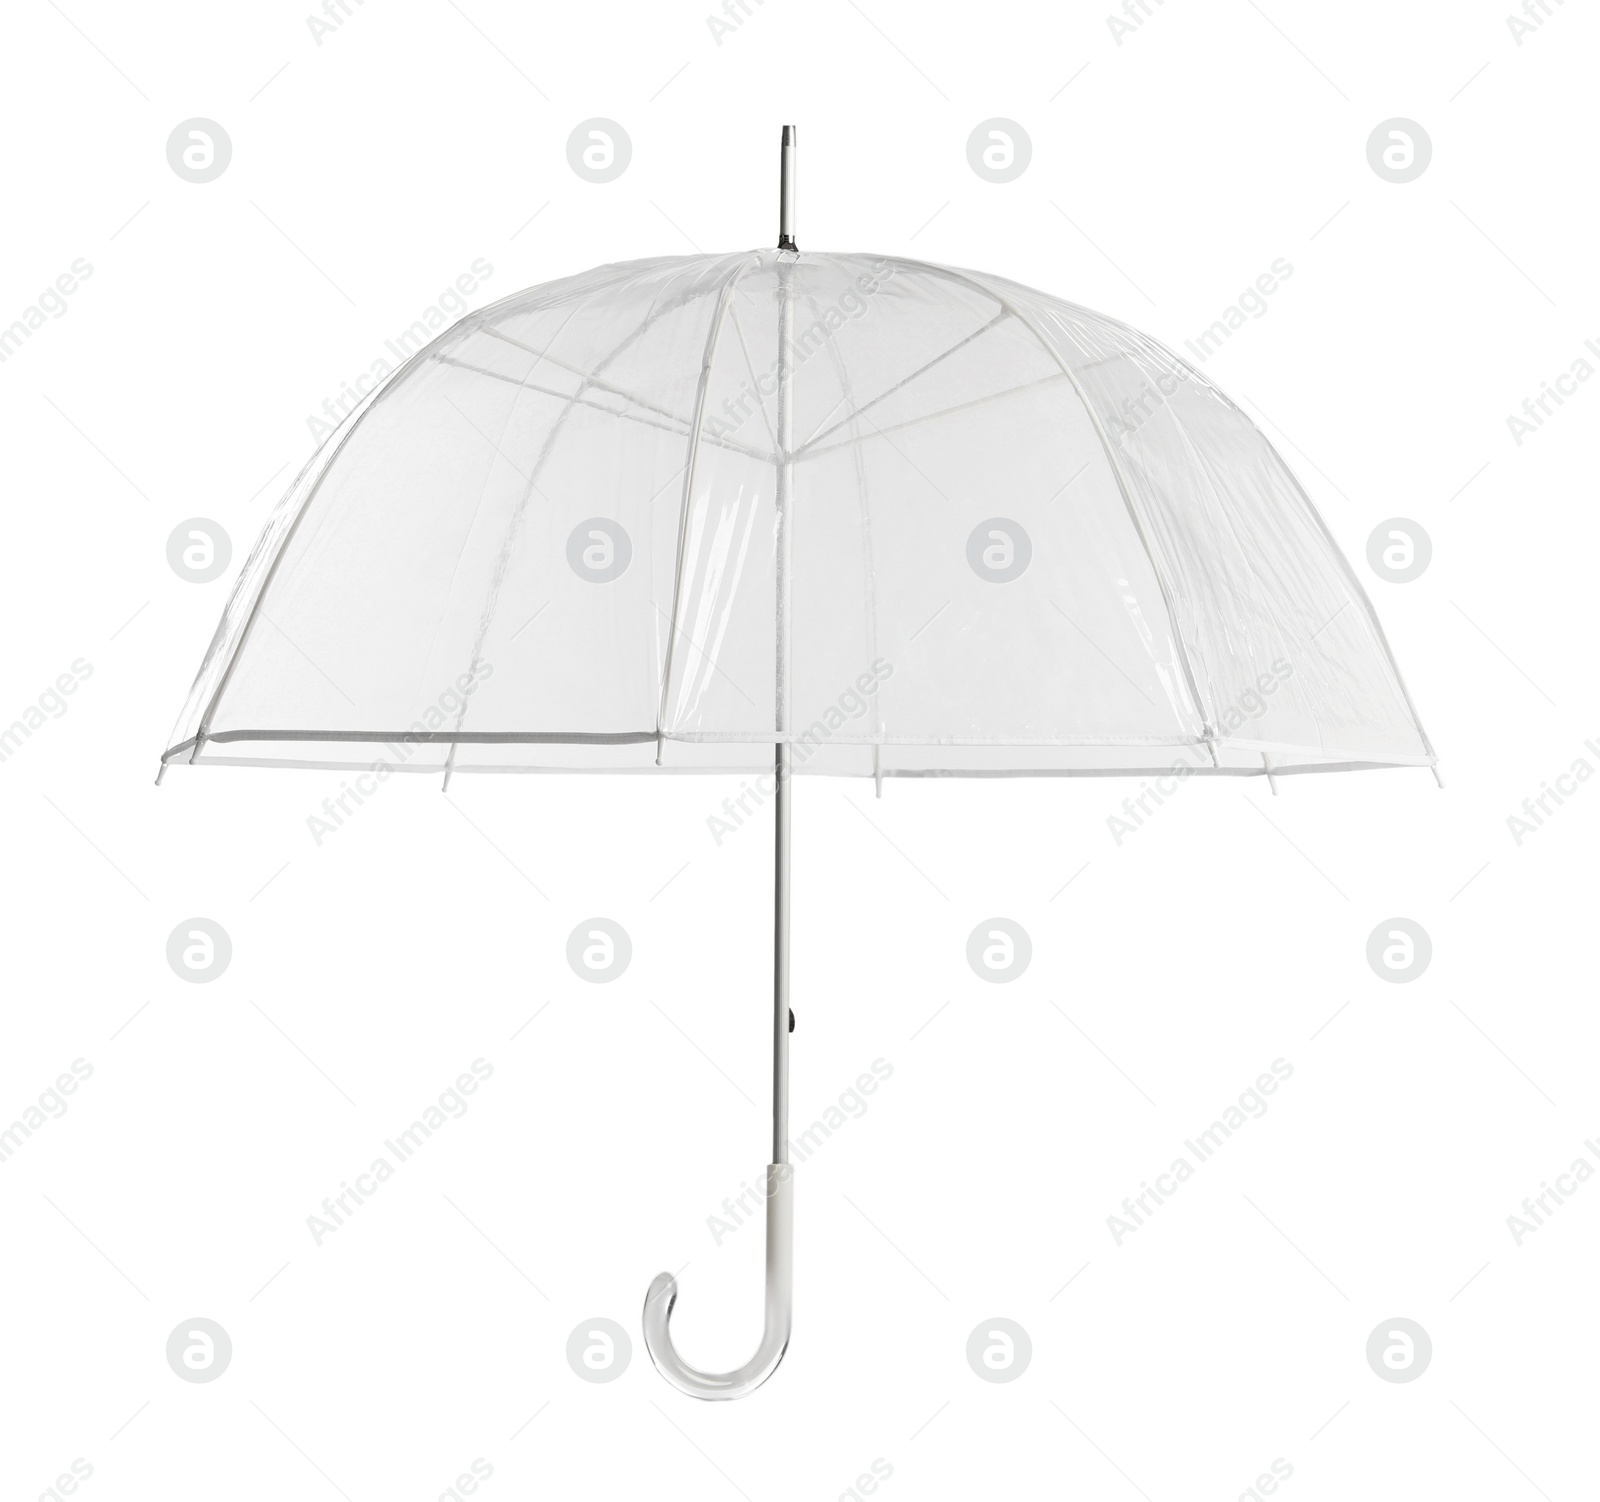 Photo of Stylish open transparent umbrella isolated on white